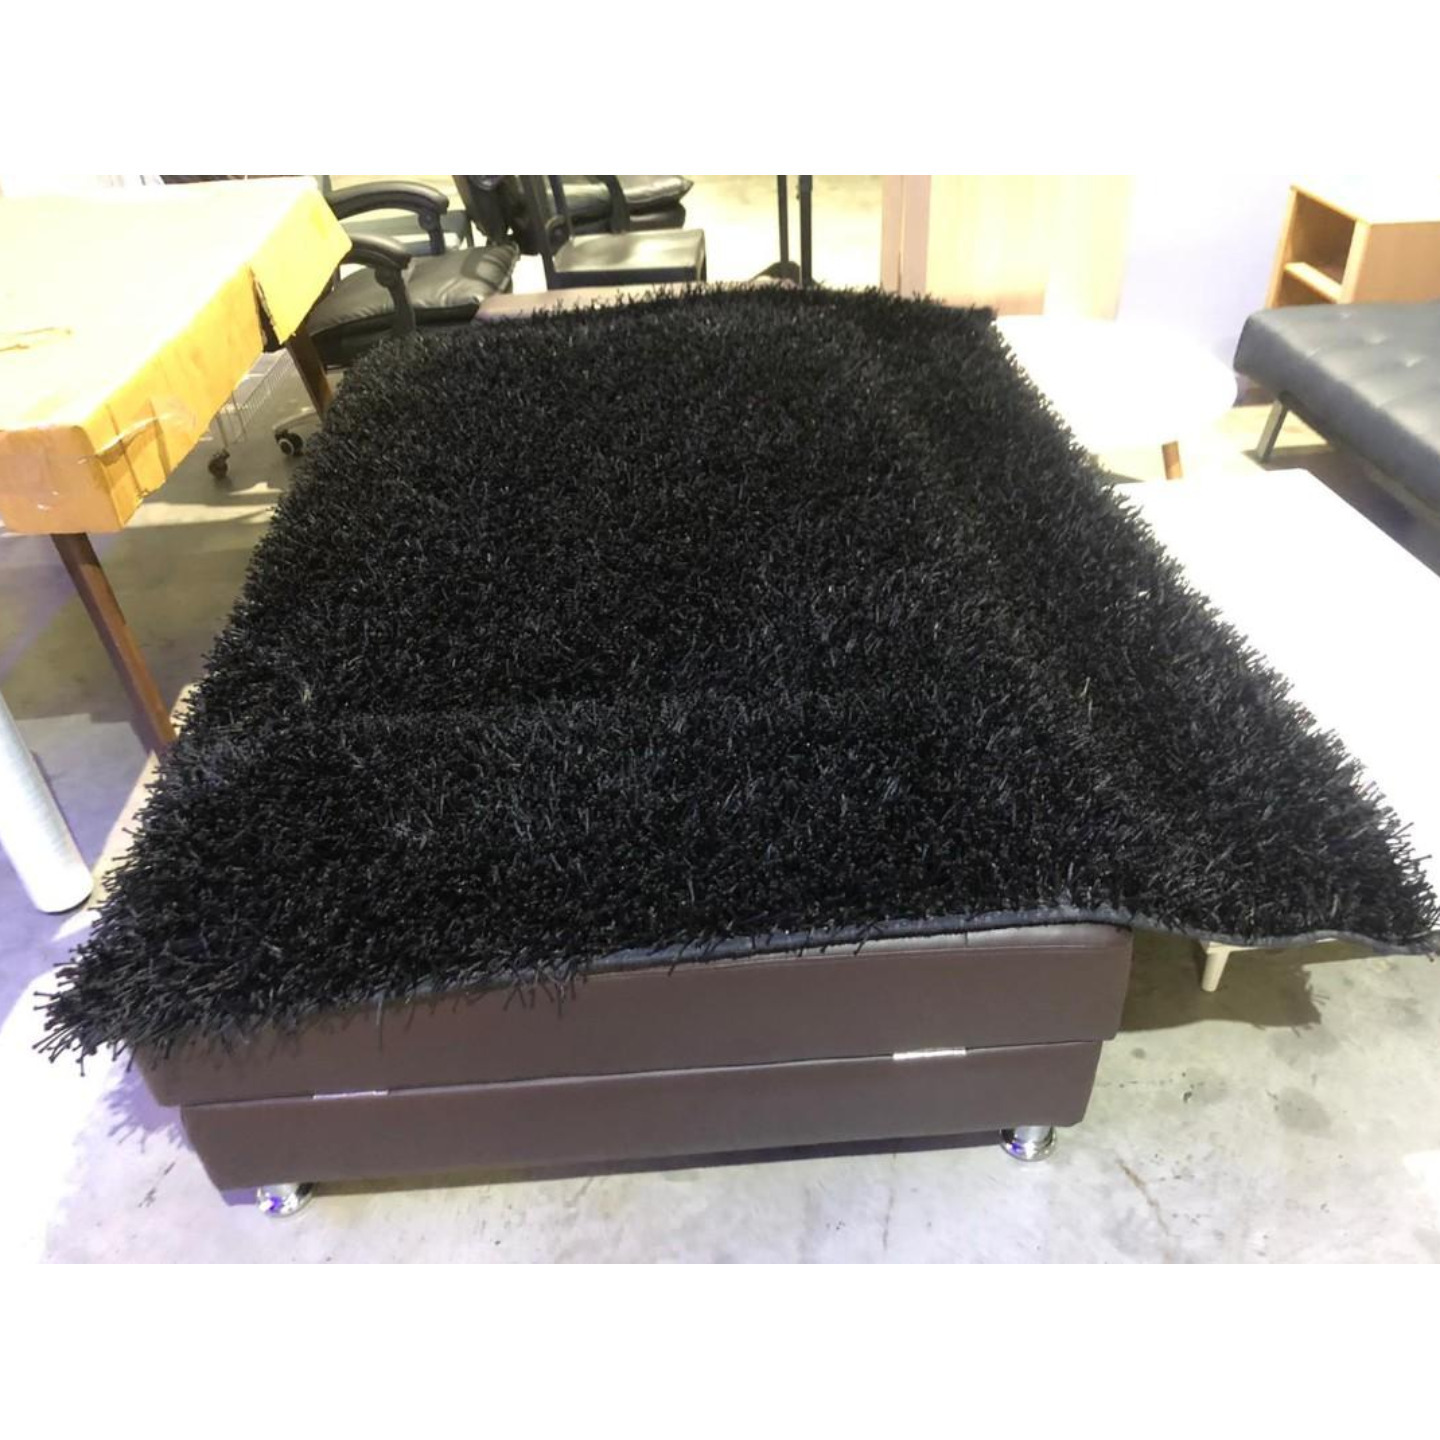 BRIGAL BLACK Carpet 1.4m x 2m